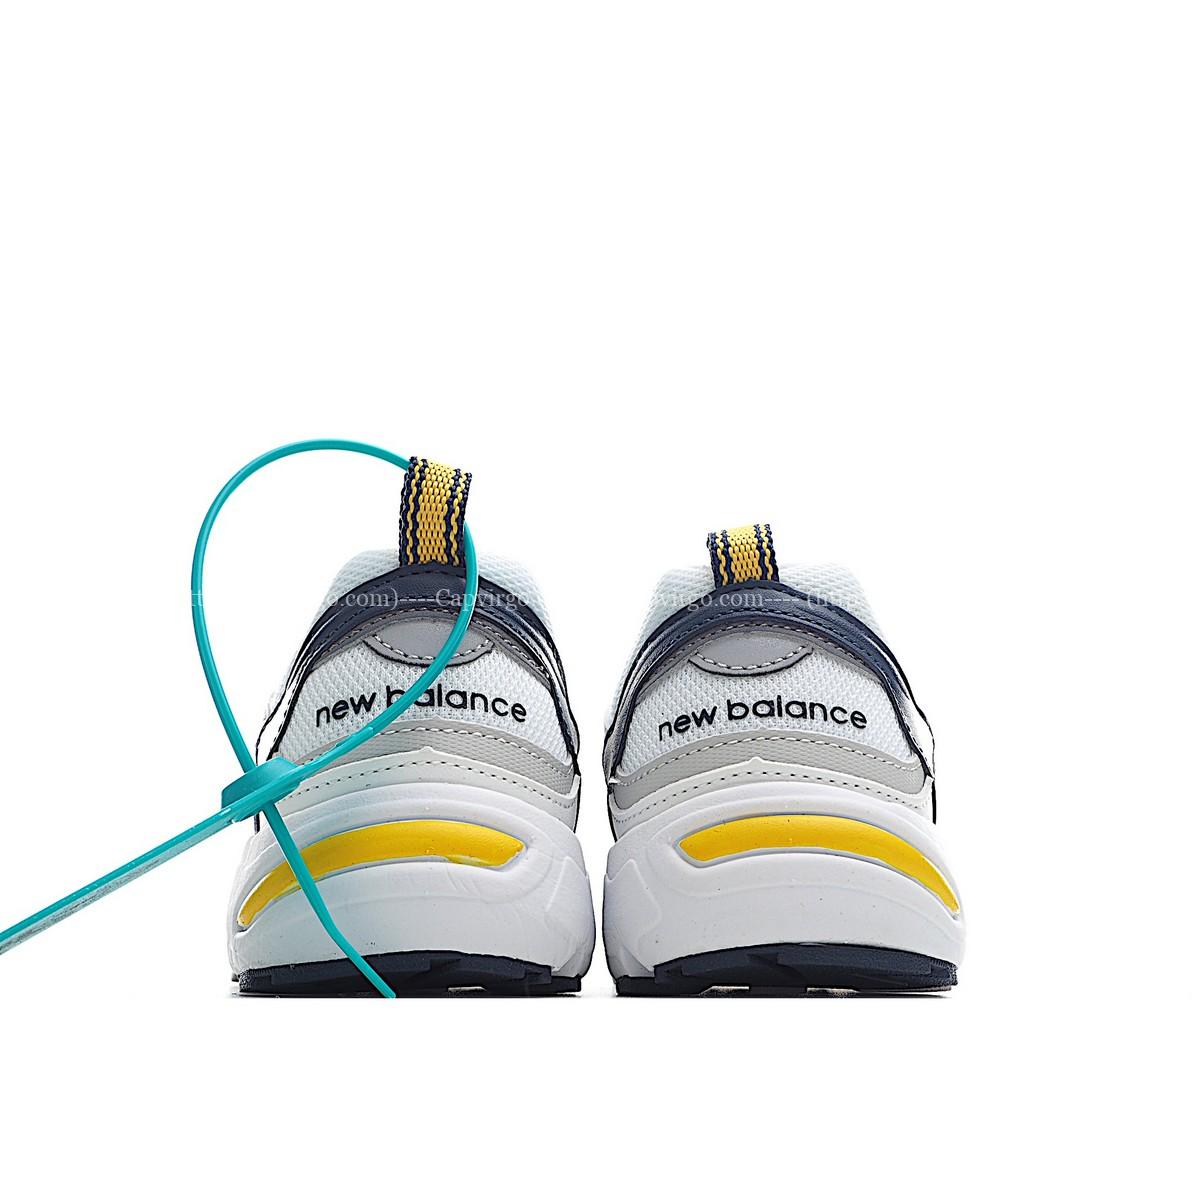 Giày chạy bộ trẻ em newbalance 878 - NB878 màu trắng vàng